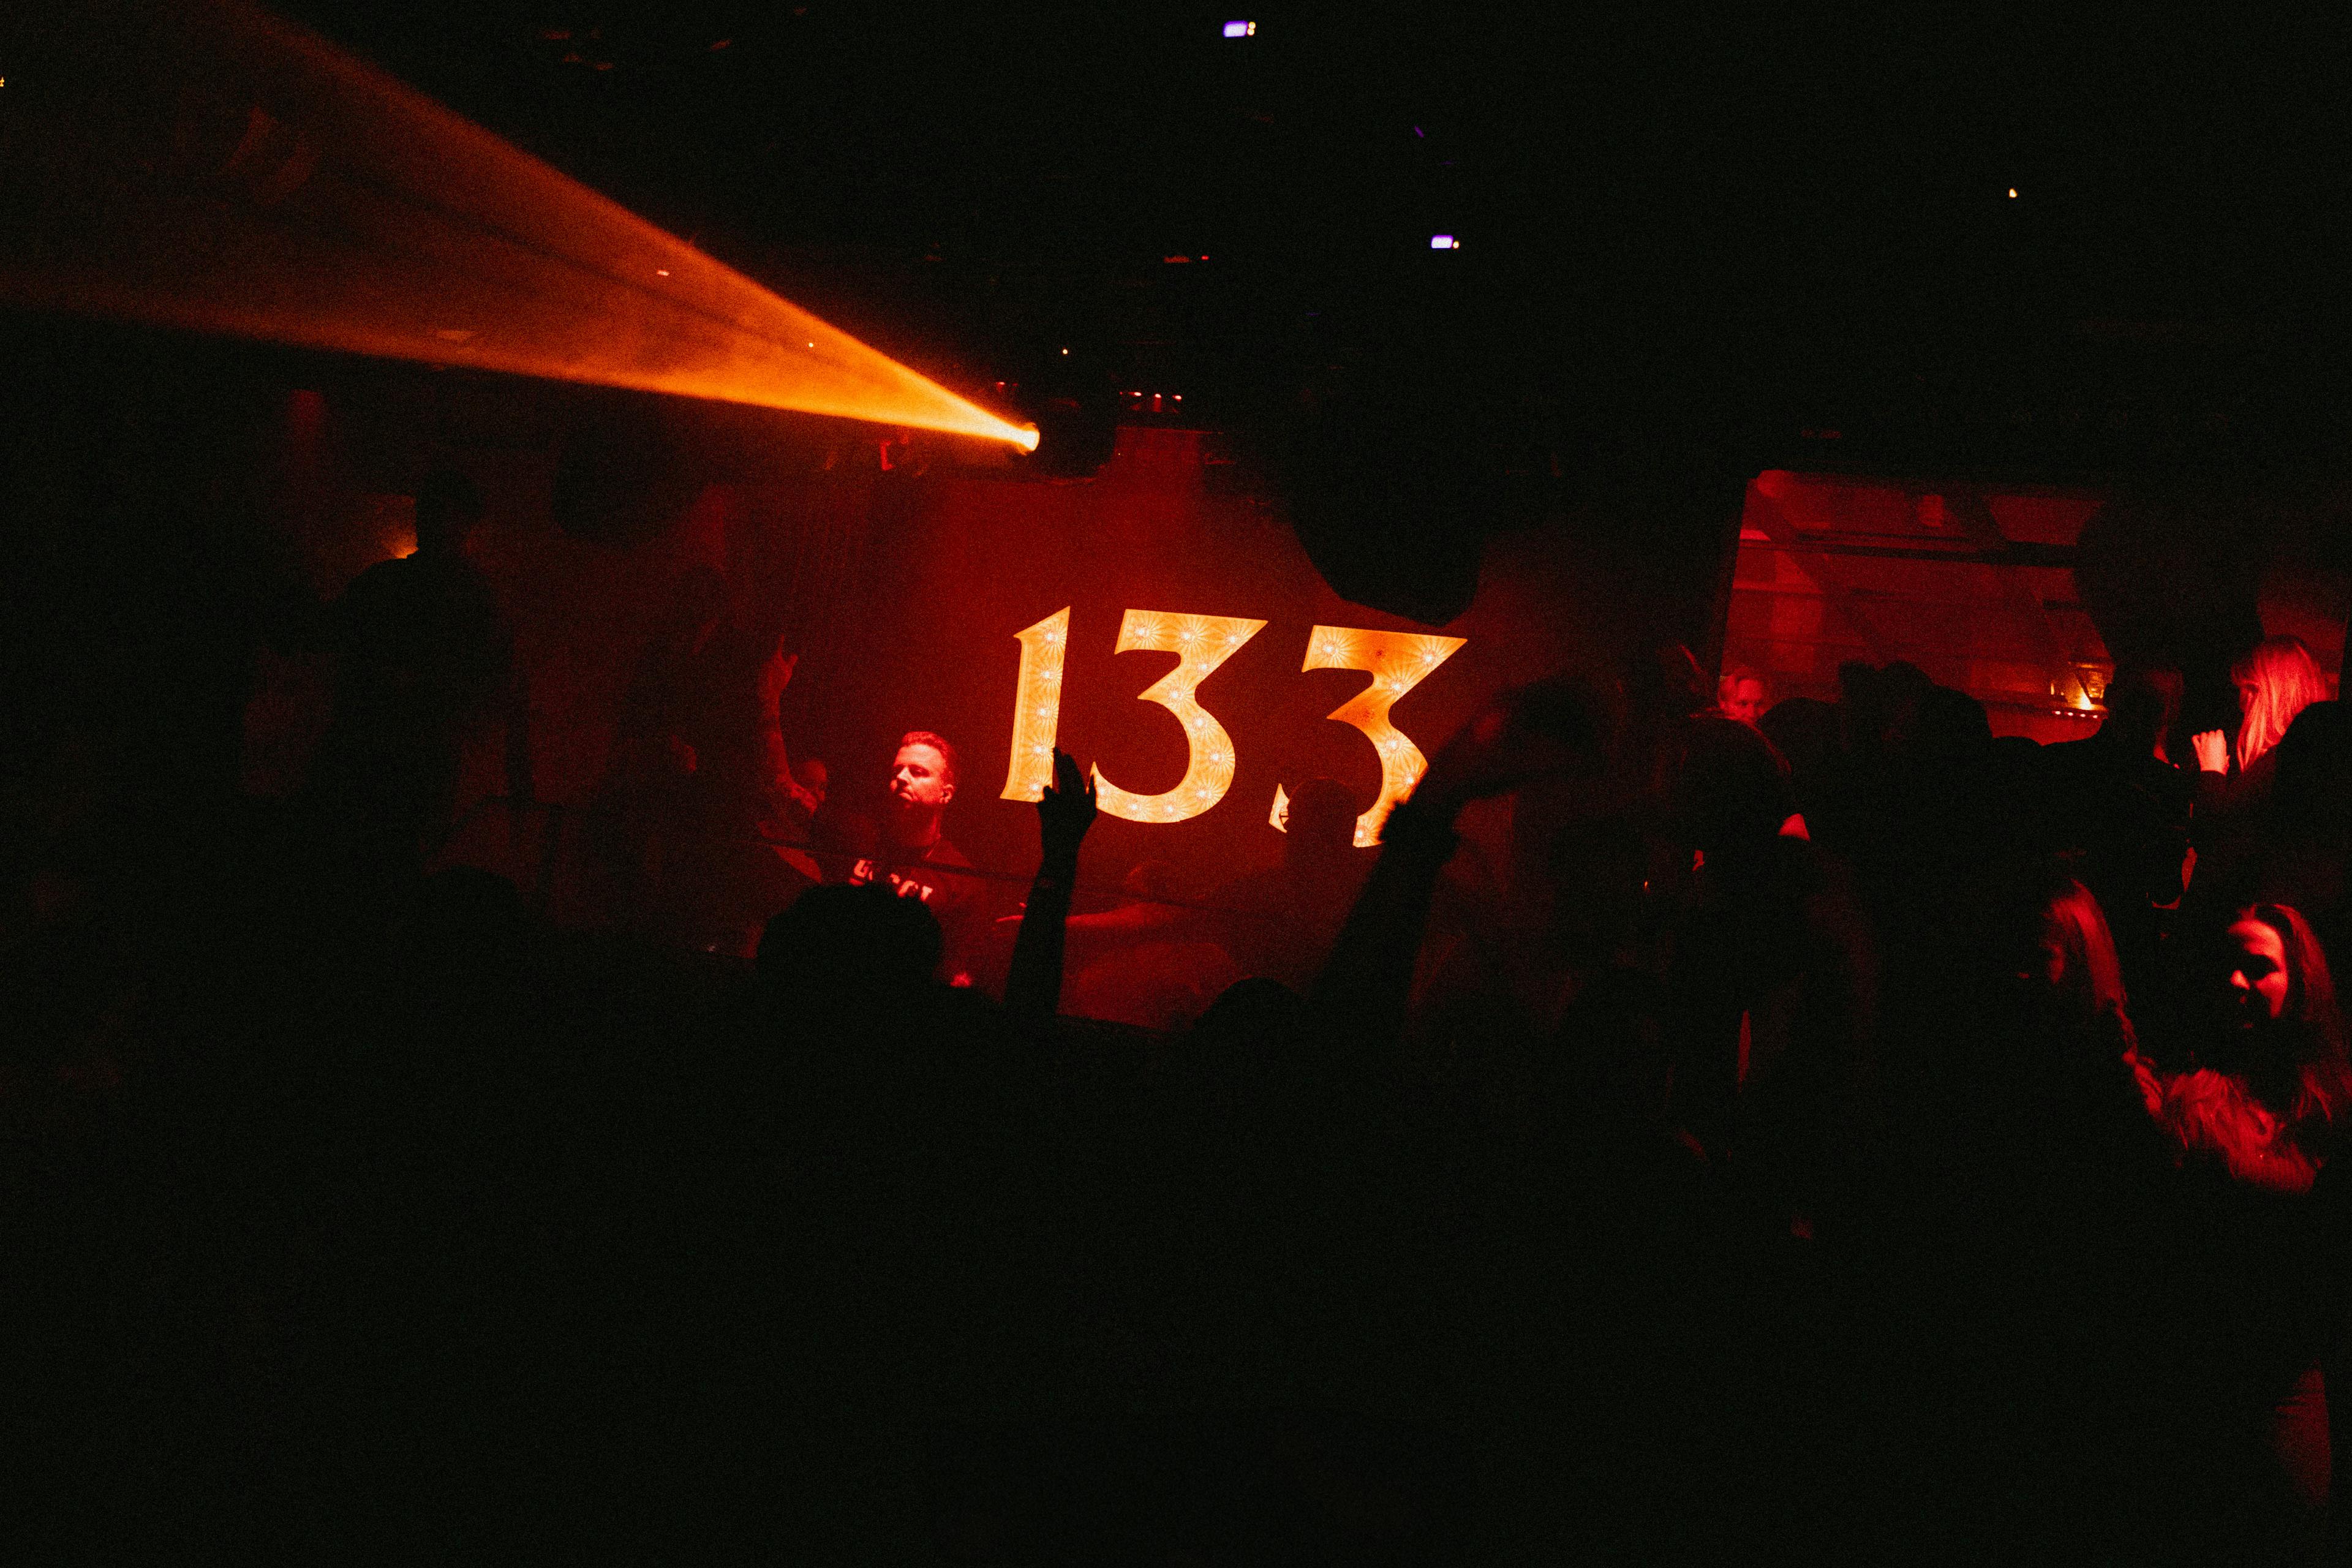 Nr 133